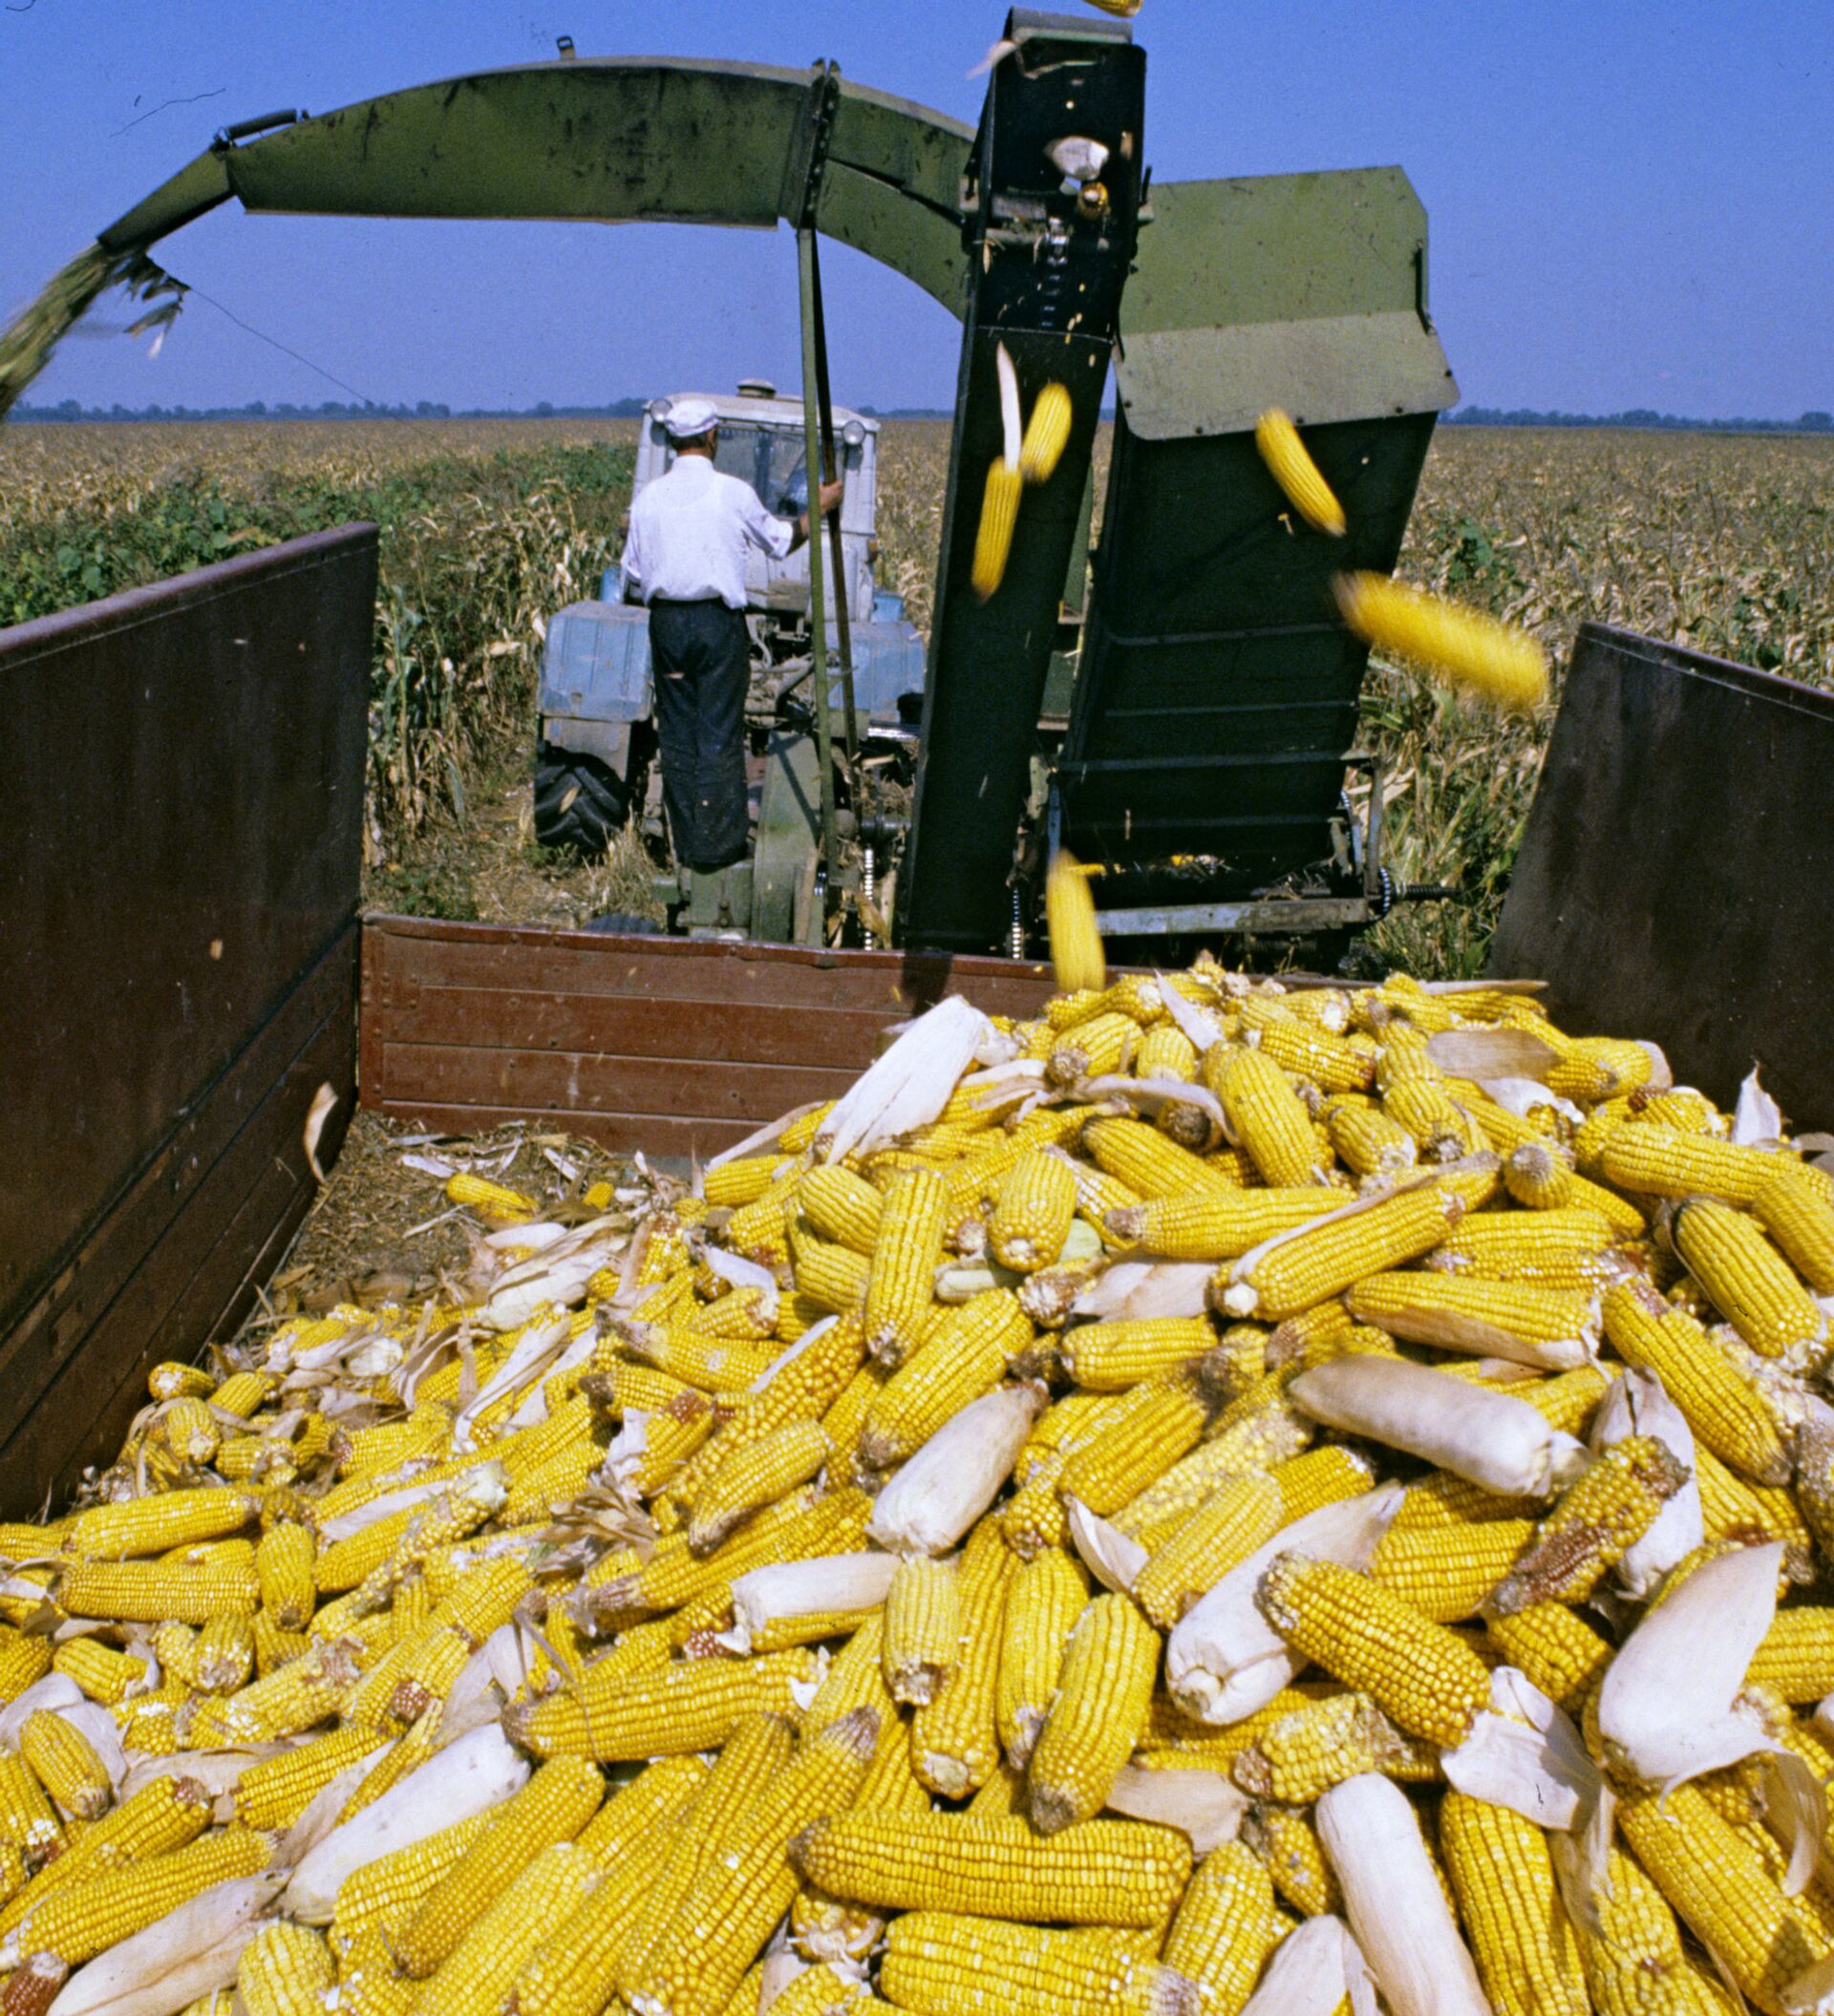 Продукт переработки кукурузы. Комбайн для уборки кукурузы в початках. Уборка кукурузы на зерно в Белоруссии. Уборка кукурузы в початках. Комбайны для сбора кукурузы с початками кукурузы.